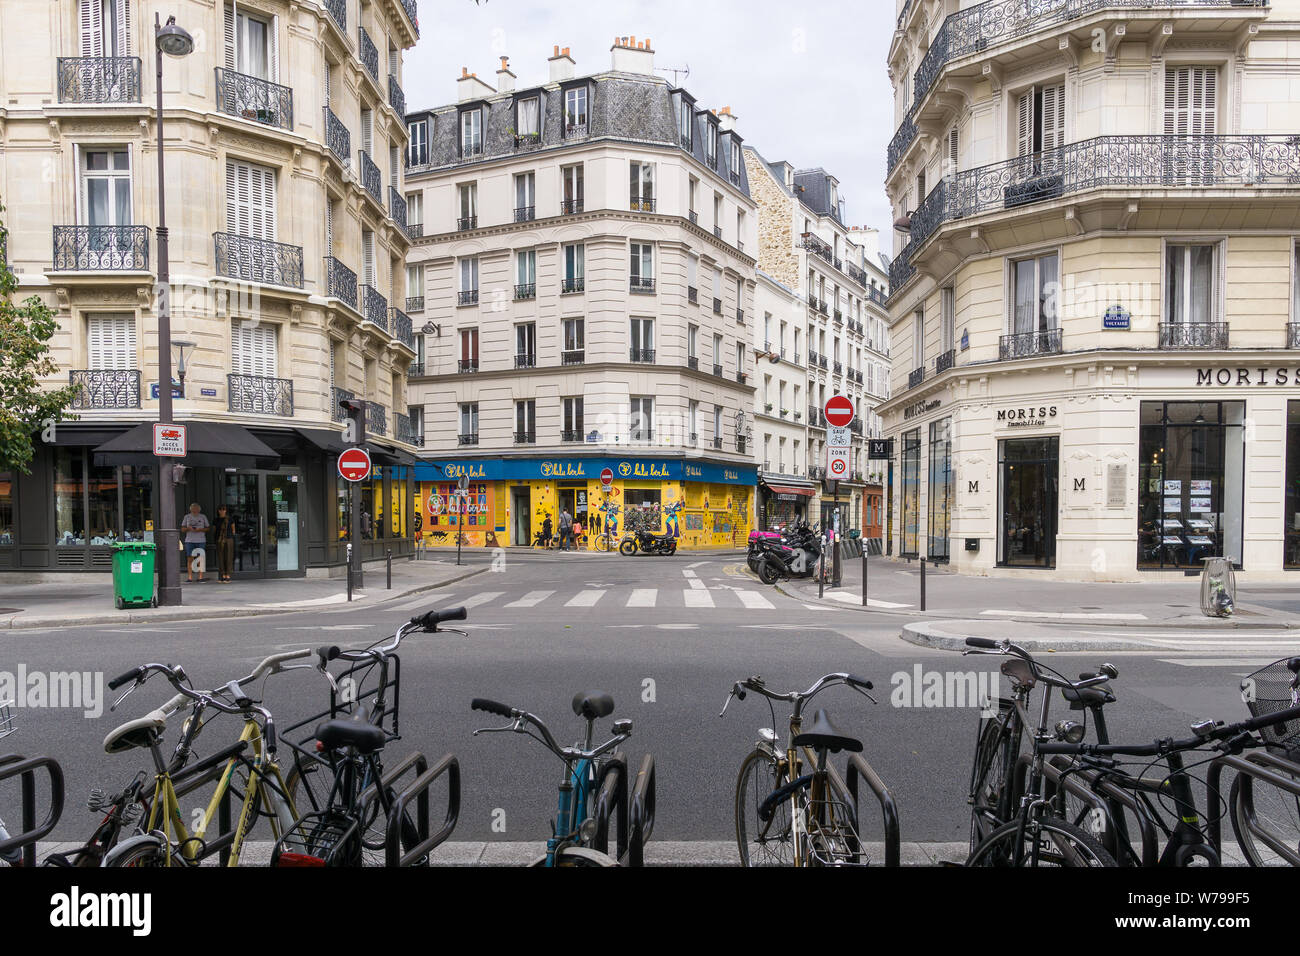 Paris - Boulevard Voltaire im 11. arrondissement von Paris an einem Sonntag Nachmittag. Frankreich, Europa. Stockfoto